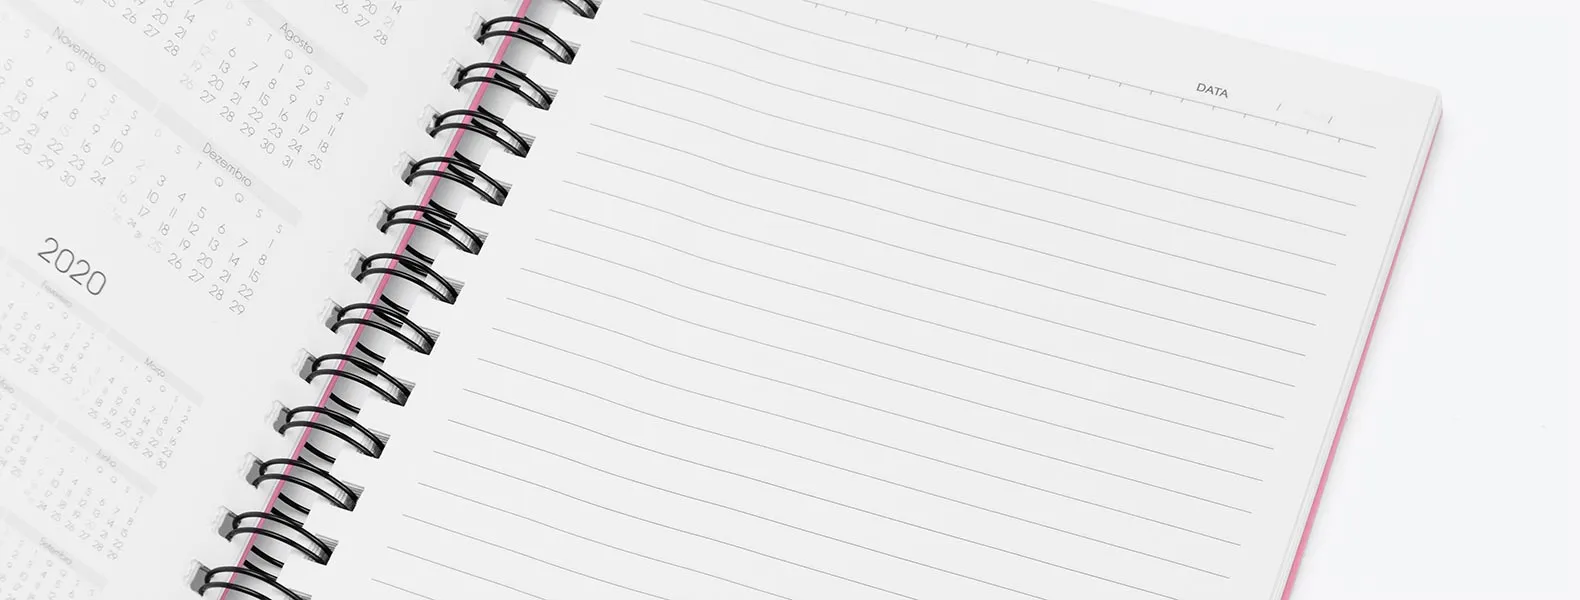 Caderno para anotações wire-o rosa com capa dura revestida em percalux linho. Conta com folha para dados pessoais, calendário e 100 folhas pautadas. Gramatura da folha de 70 g/m2.